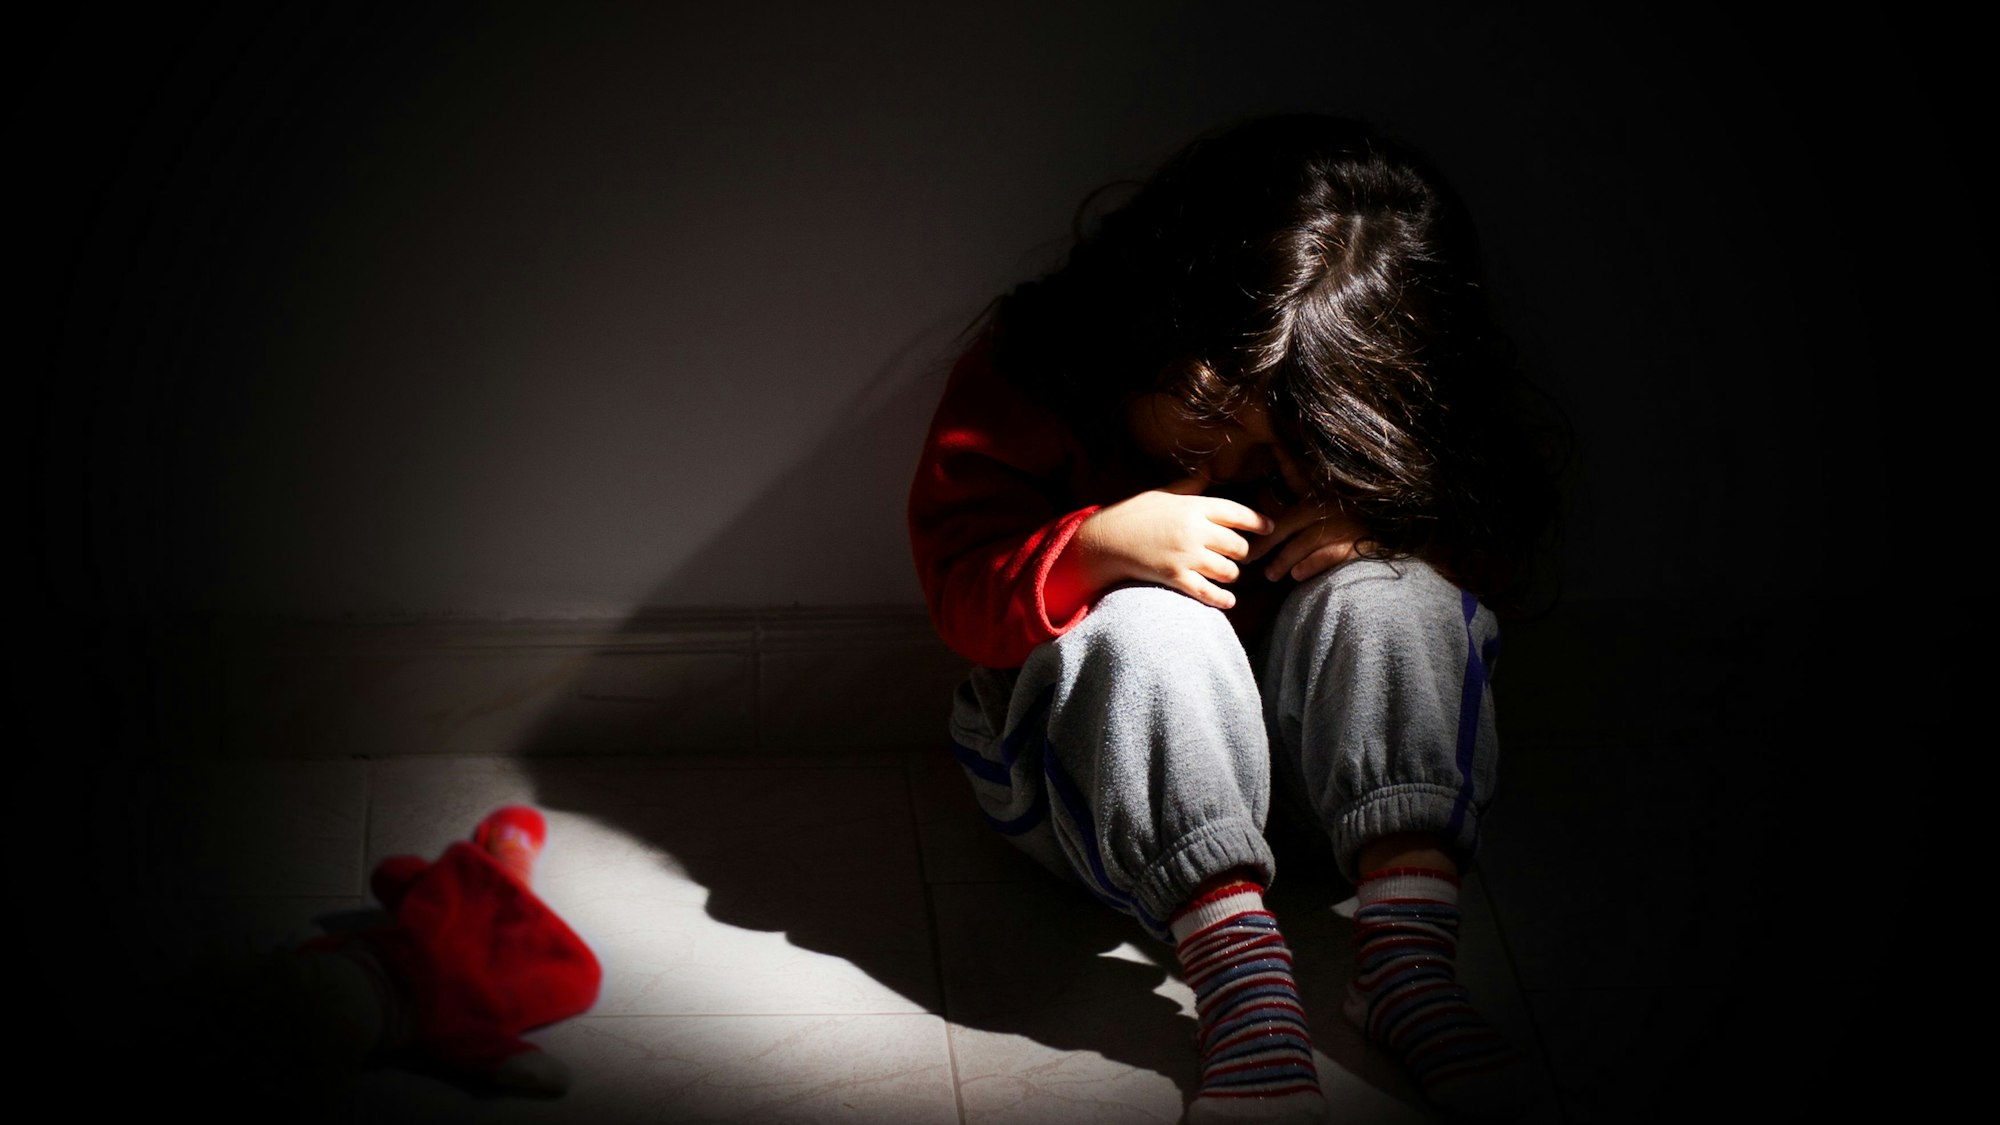 Ein kleines Mädchen sitzt zusammengekauert in einem dunklen Raum.